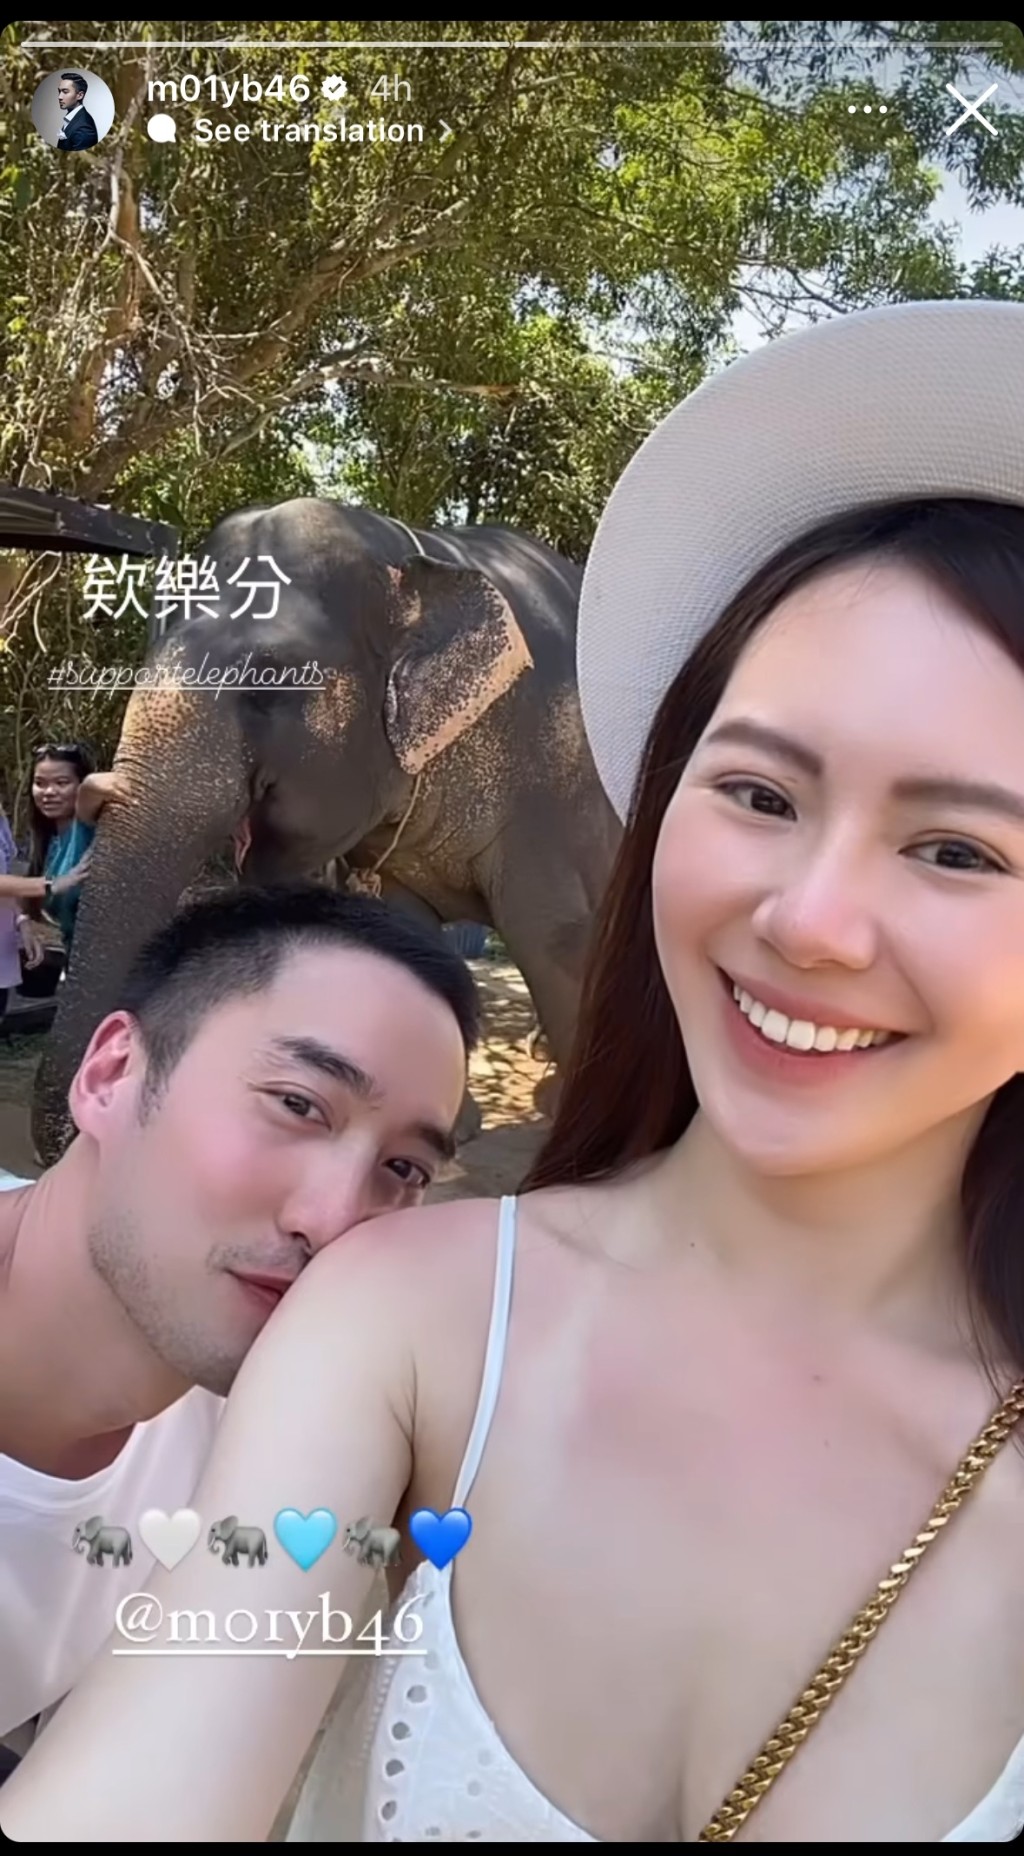 赖弘国亦有分享去睇大象的照片，老婆着上同一条裙。